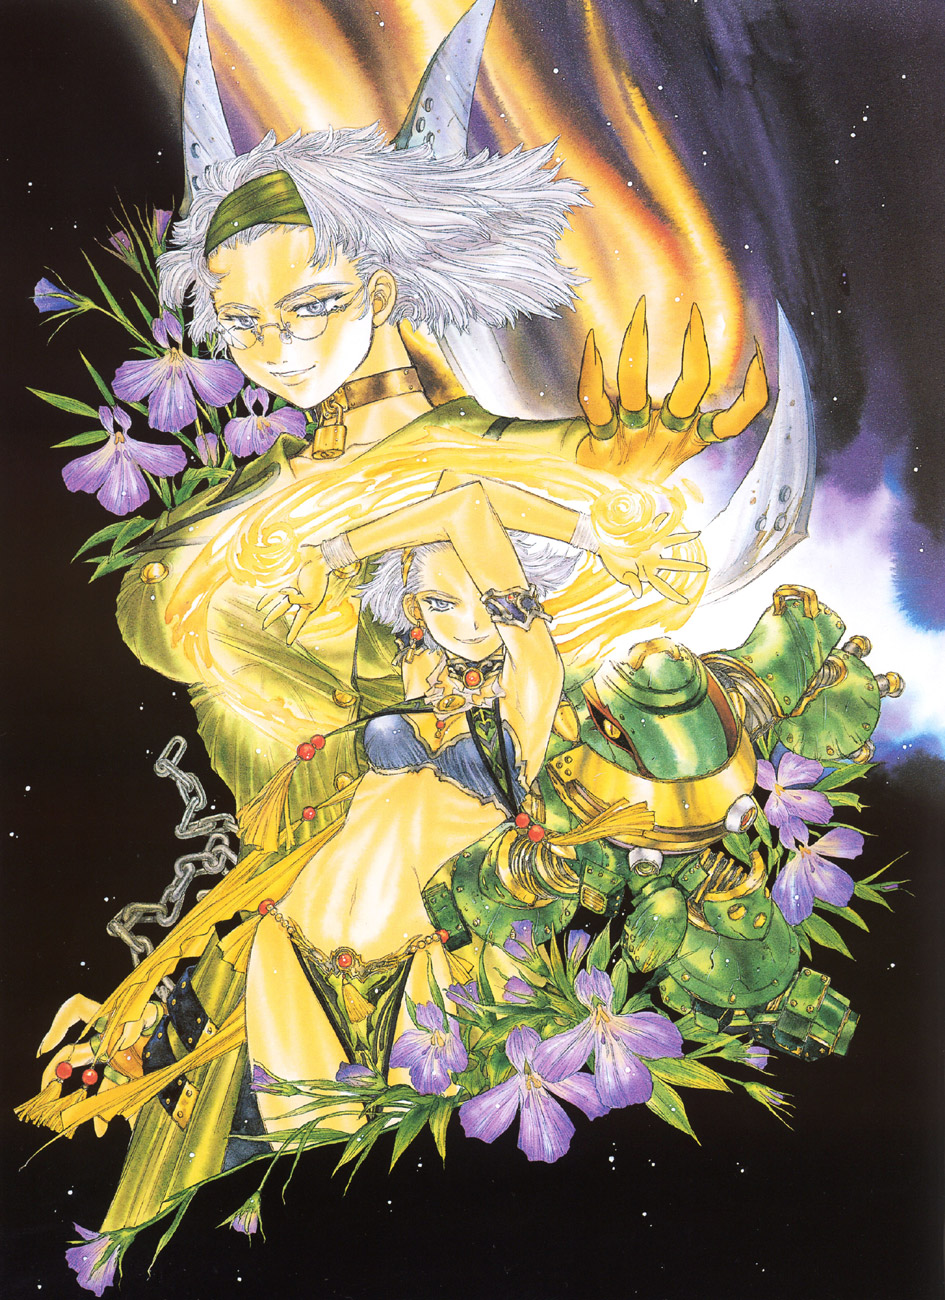 Sakura Wars illustrations: the Origin + Tribute image by Nakamura Hirofumi